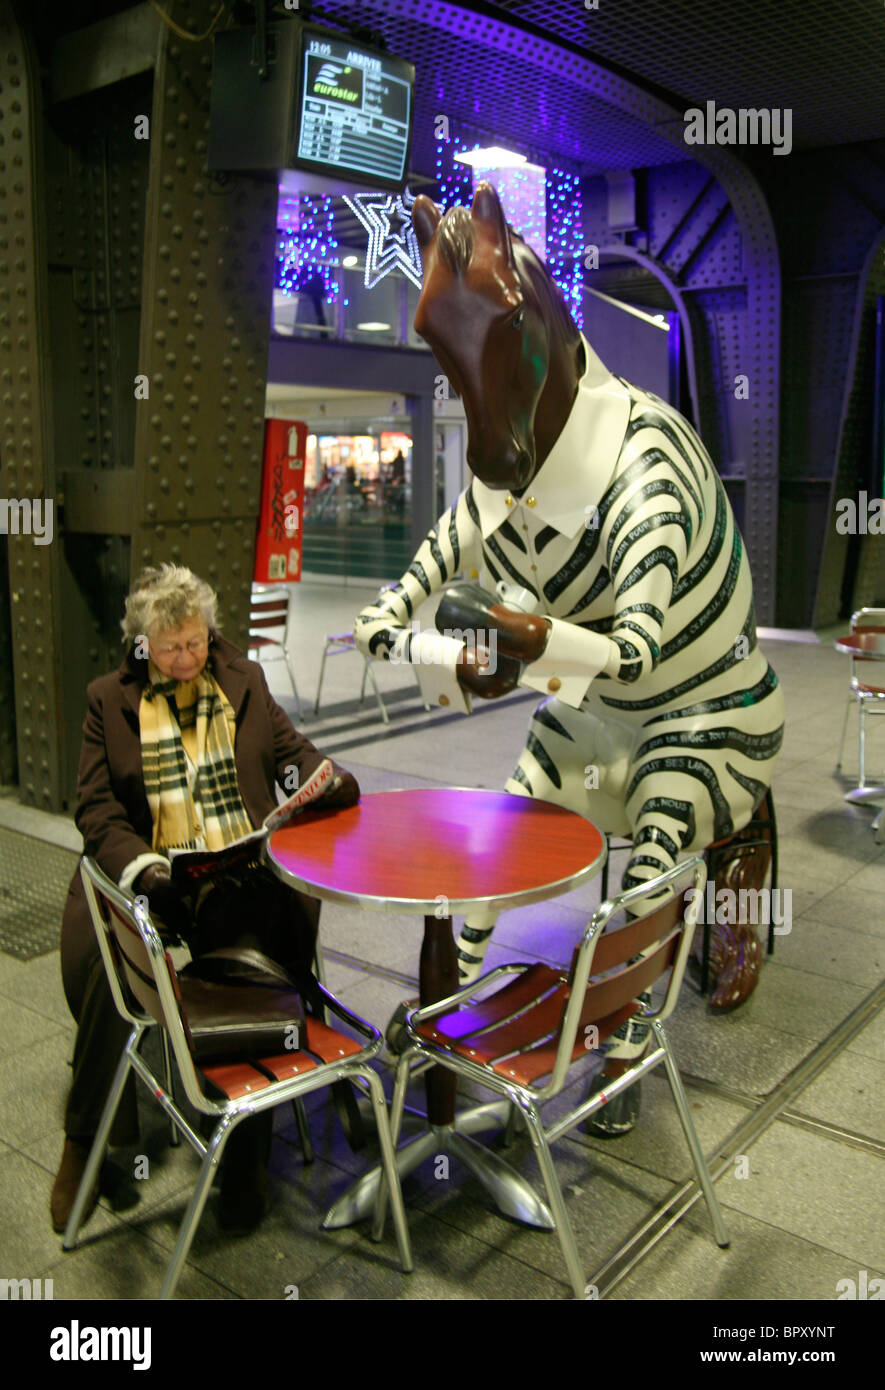 Femme à une table de café avec un cheval en vêtements zébrés, gare de Bruxelles, Belgique Banque D'Images